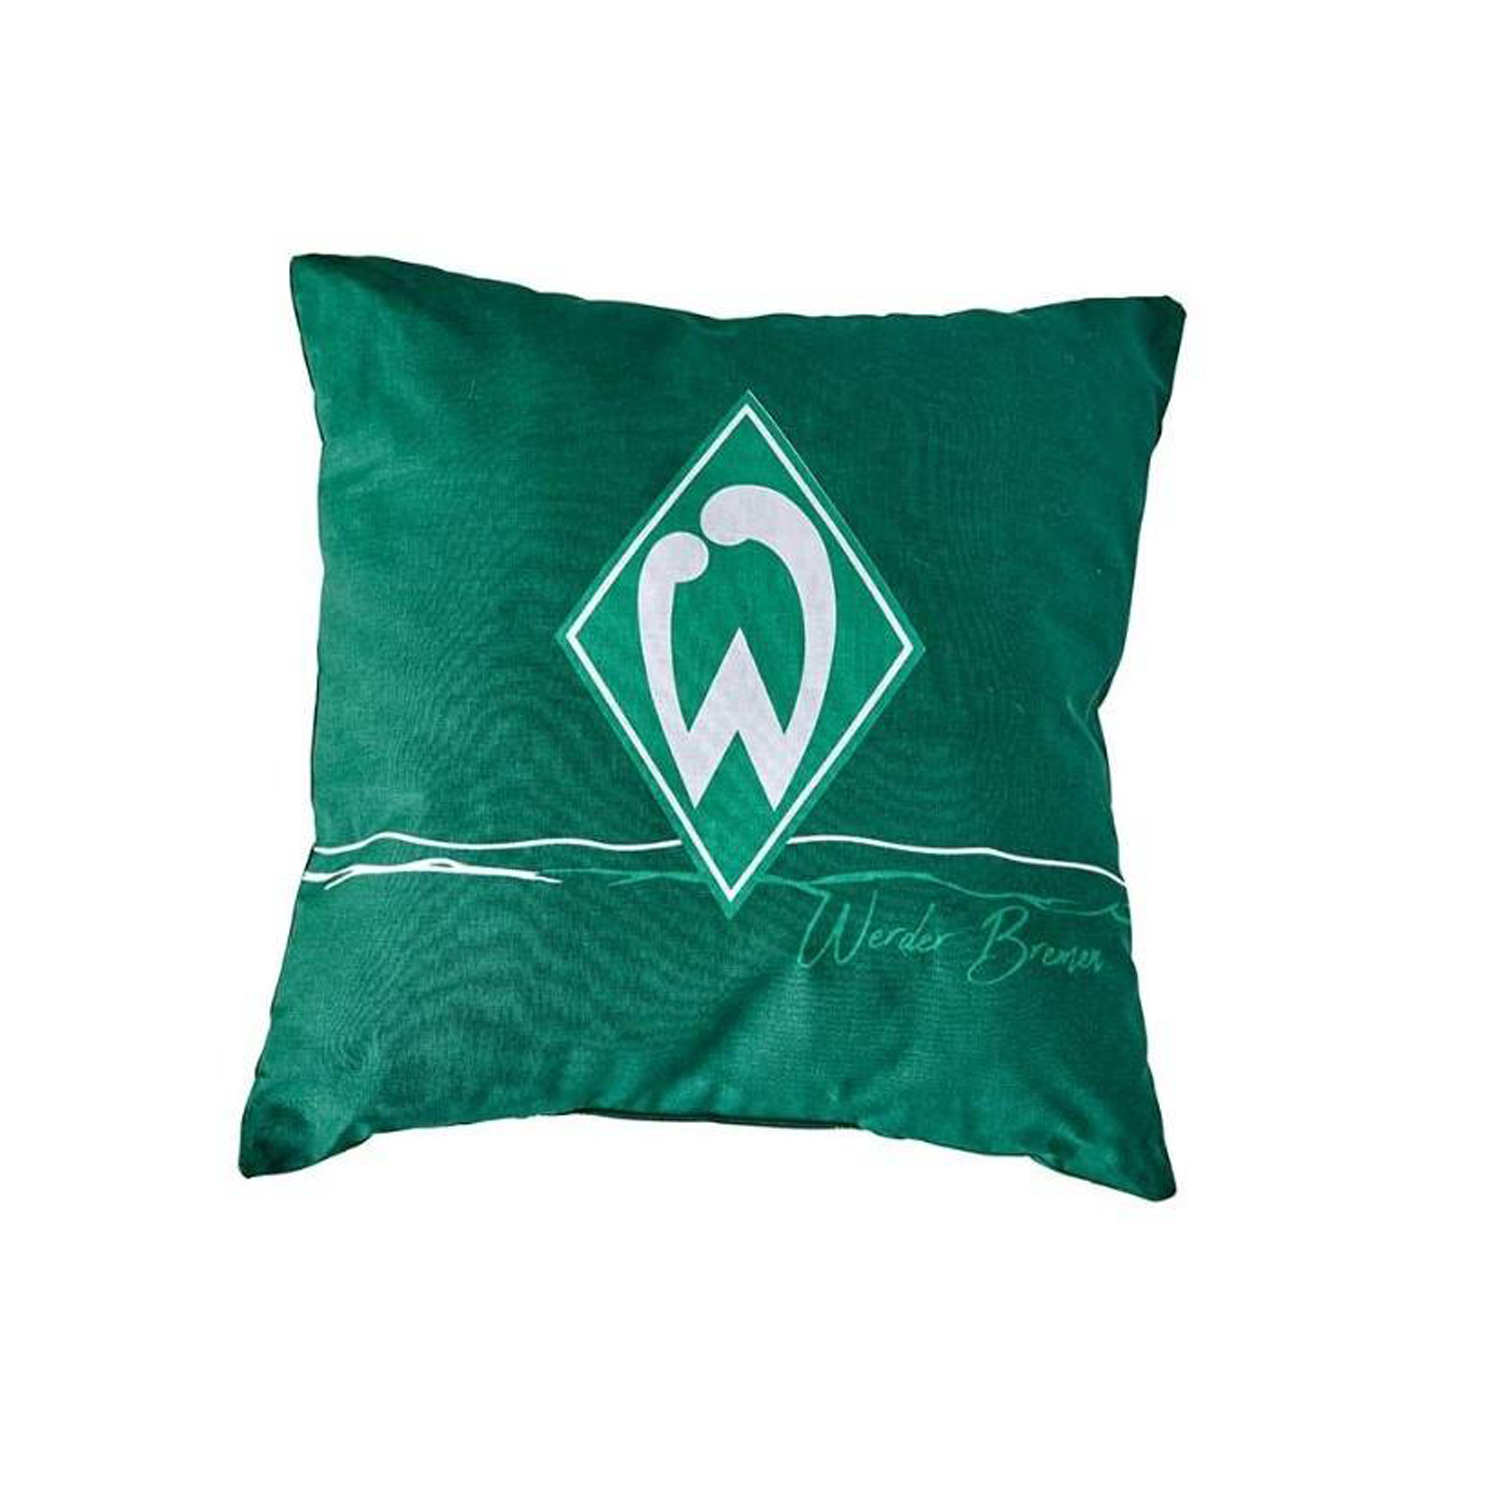 SV Werder Bremen Kissen Raute 40x40cm - grün